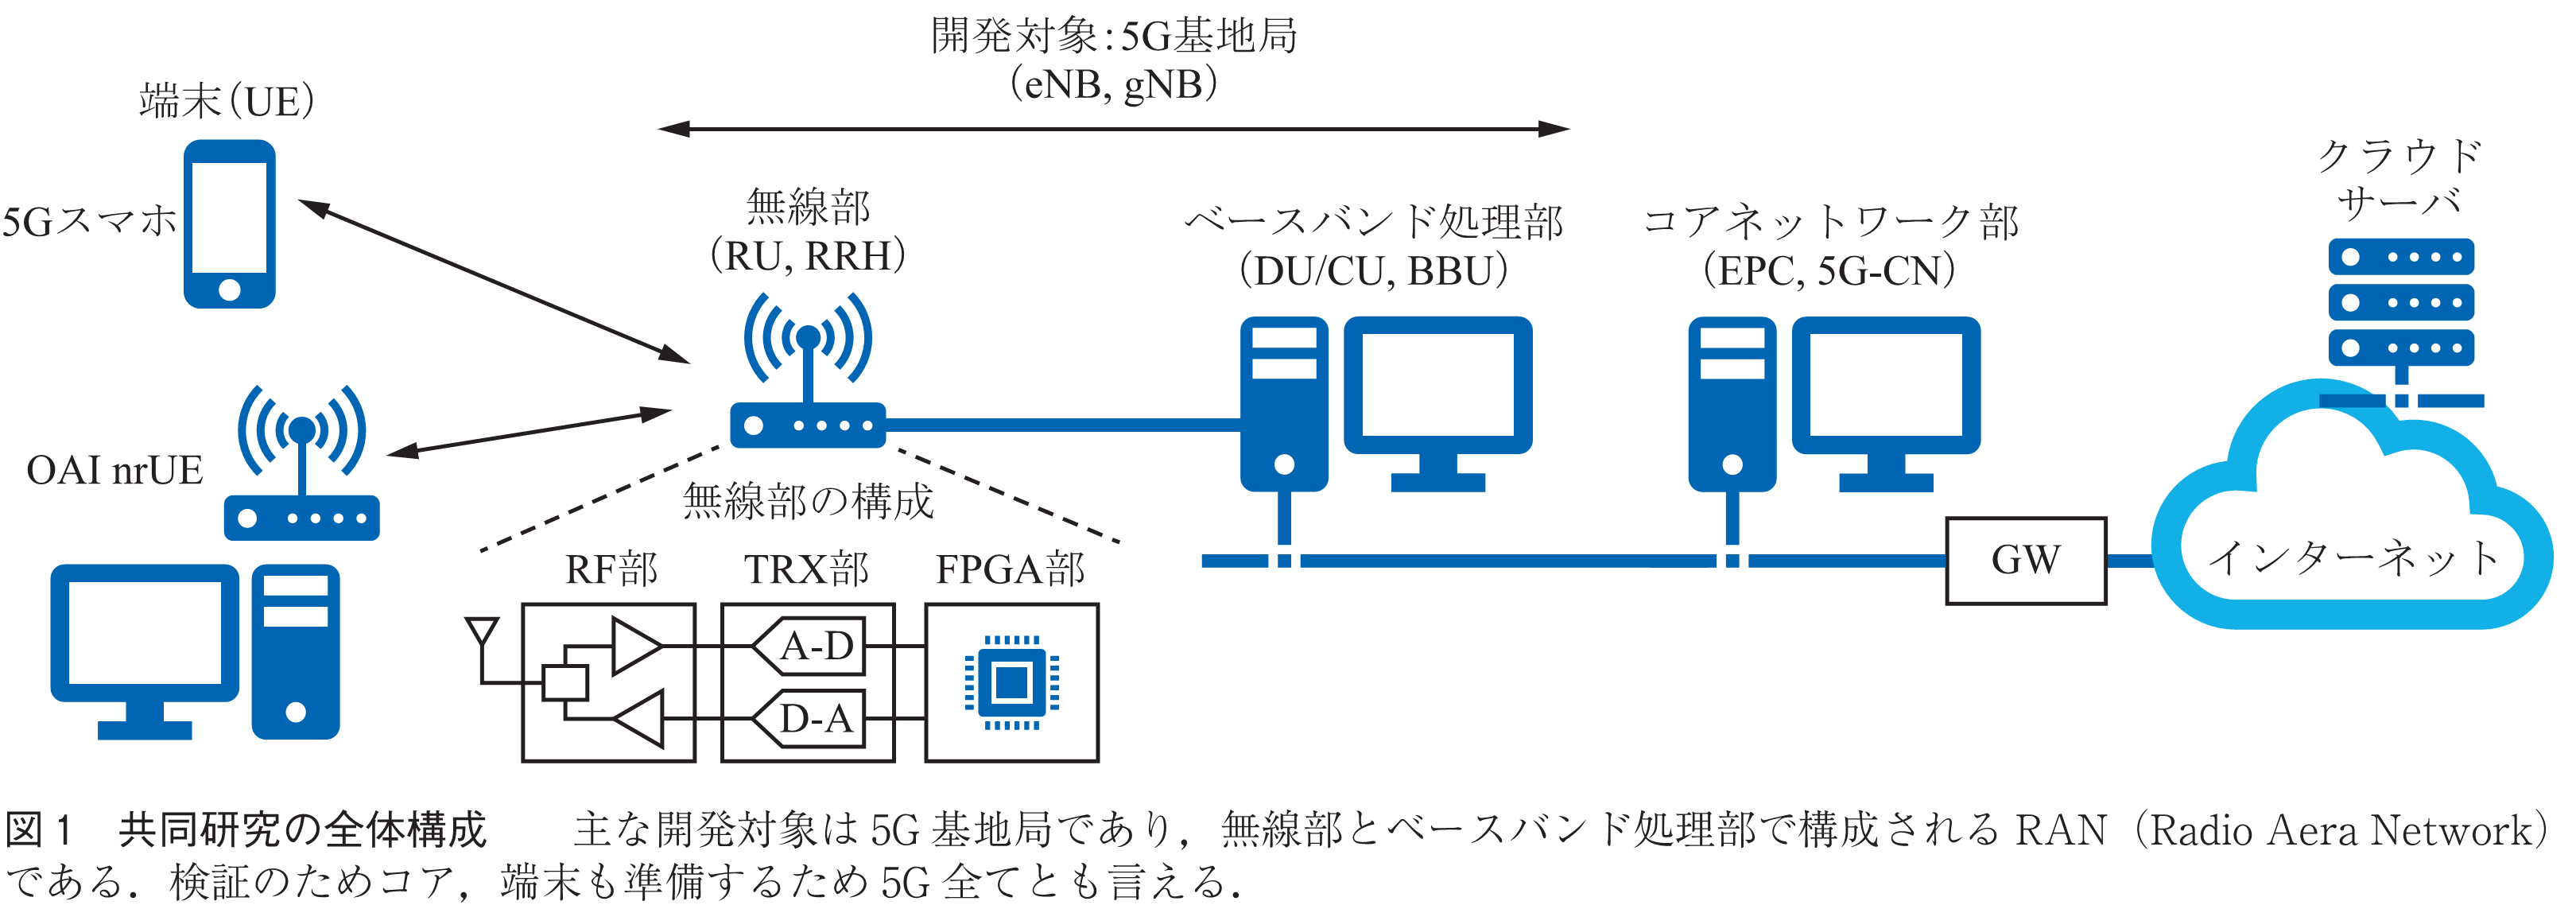 図1　共同研究の全体構成　　主な開発対象は5G基地局であり，無線部とベースバンド処理部で構成されるRAN（Radio Aera Network）である．検証のためコア，端末も準備するため5G全てとも言える．